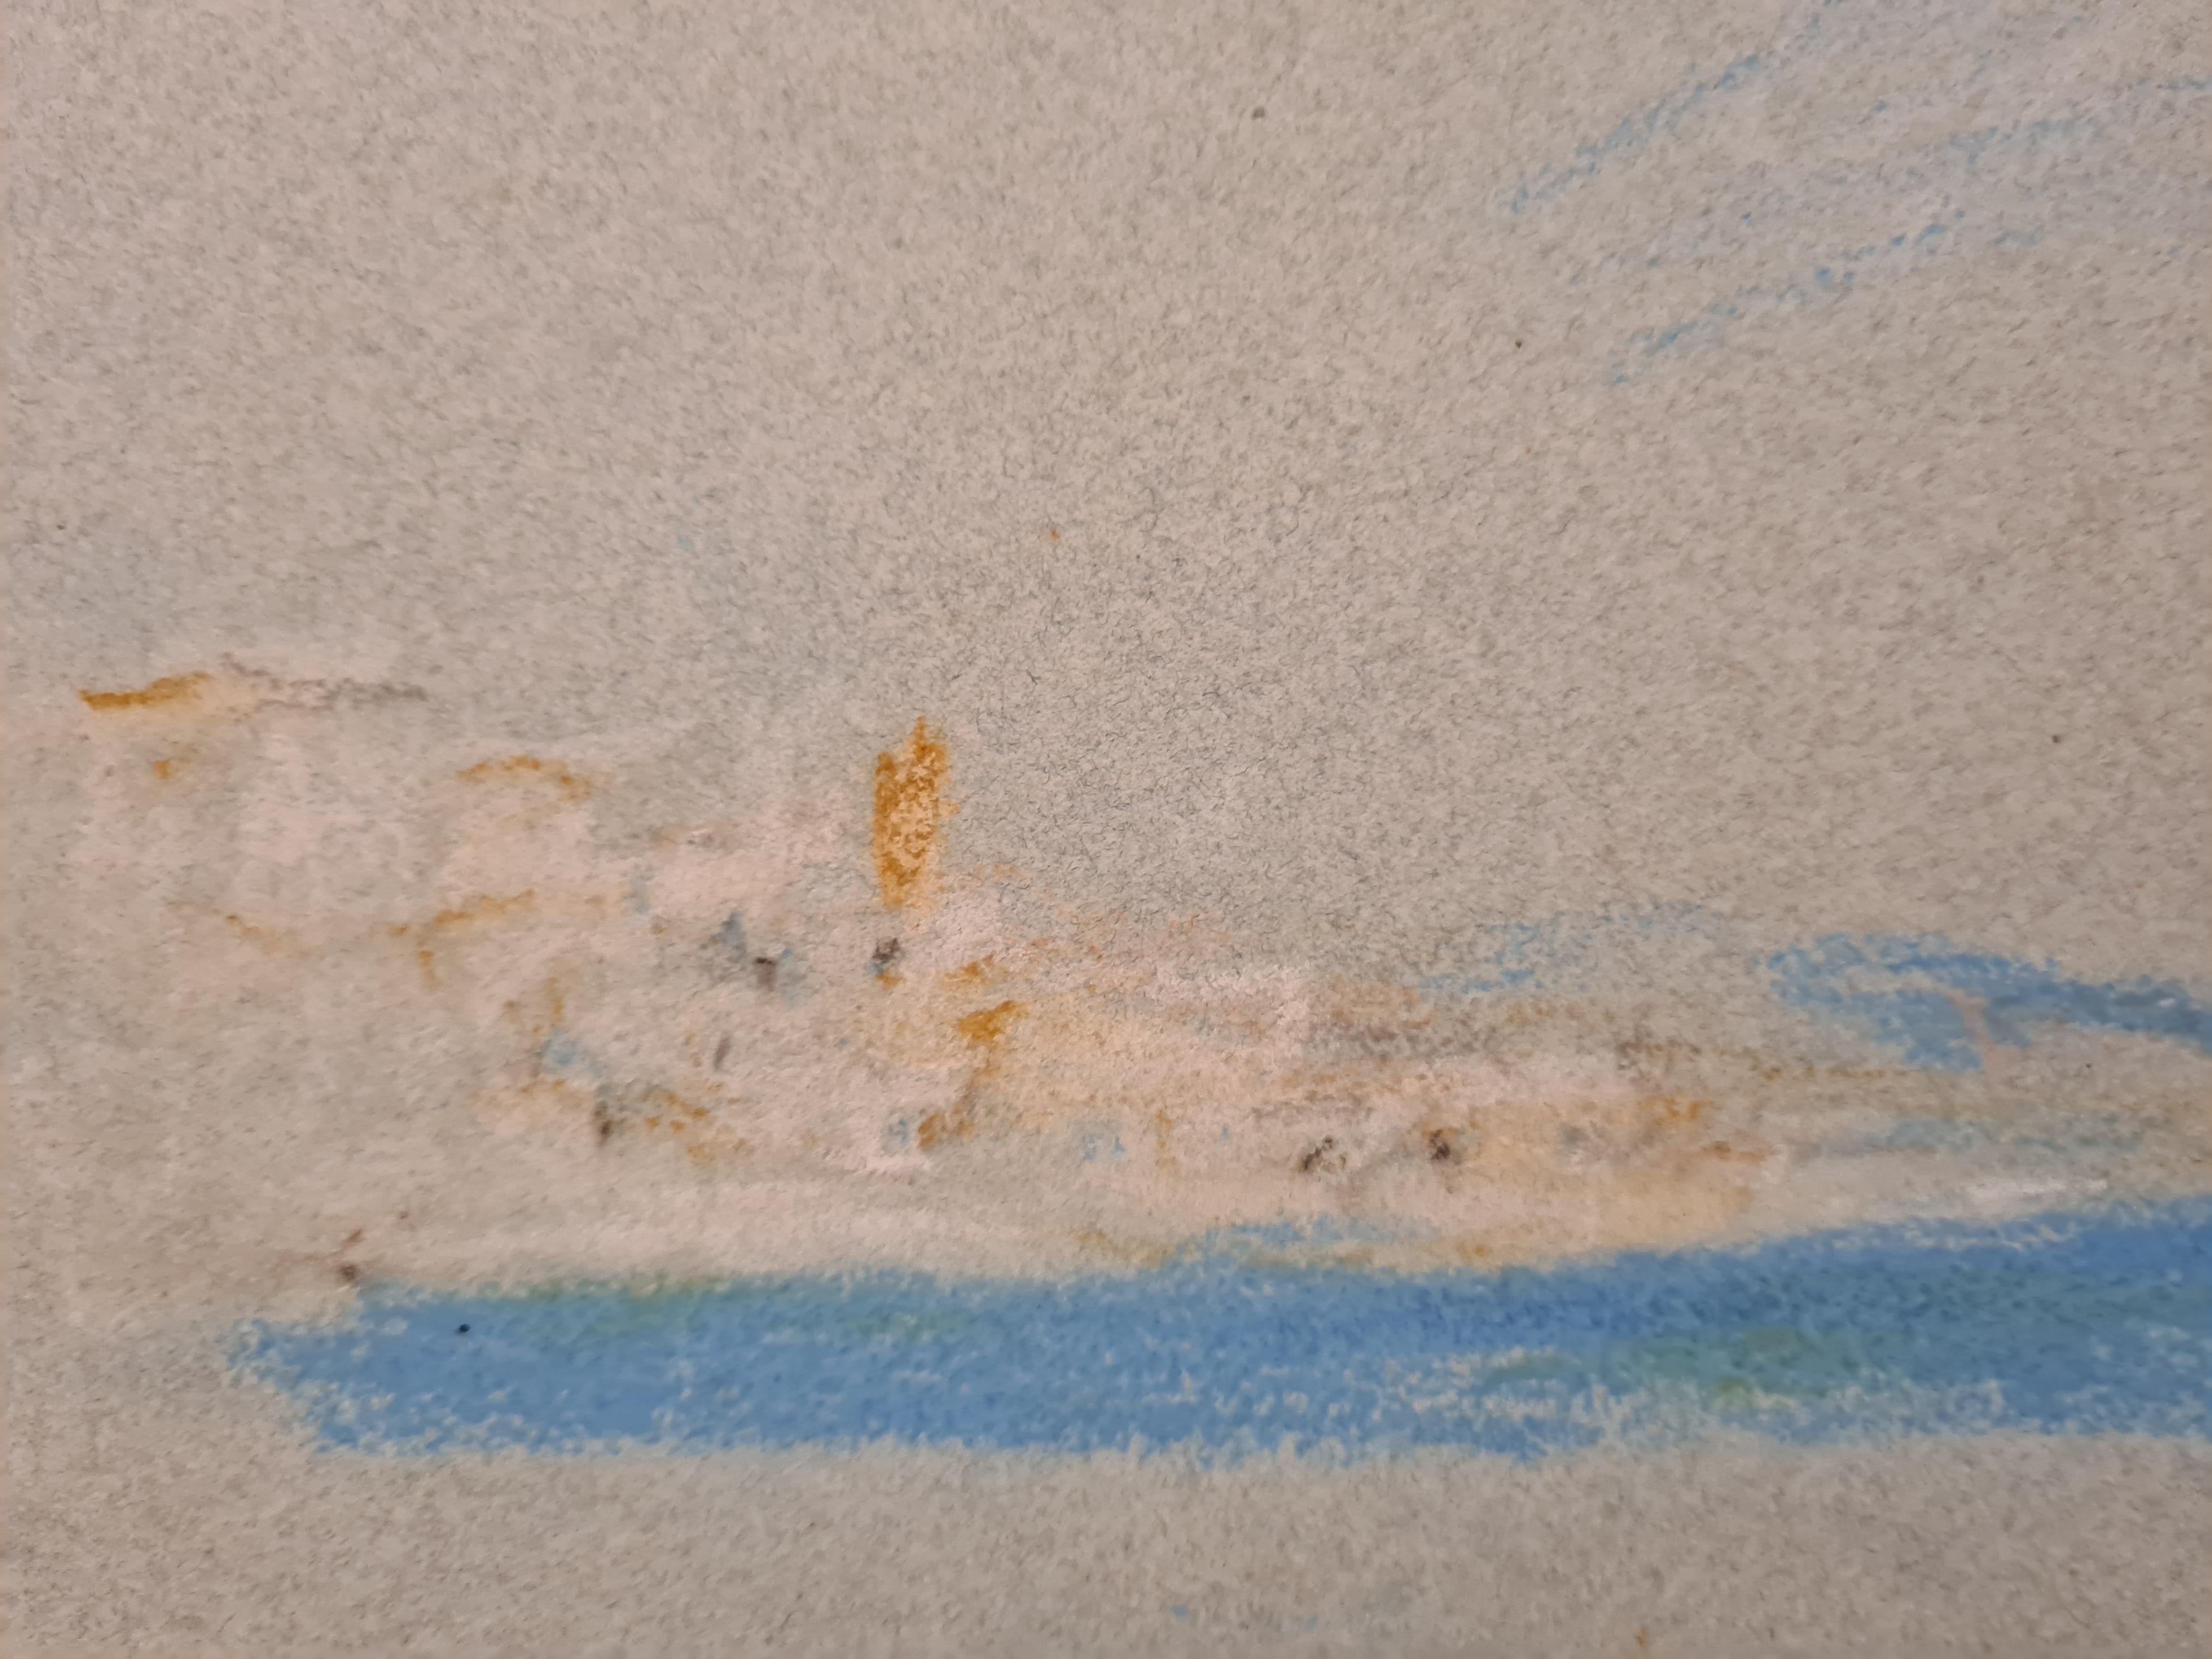 
Pastellzeichnung aus der Mitte des 19. Jahrhunderts, Ansicht von Bellagio am Comer See von Hercules Brabazon Brabazon. Das Werk befindet sich im Original-Passepartout und ist vom Künstler handsigniert (HBB).

Das 